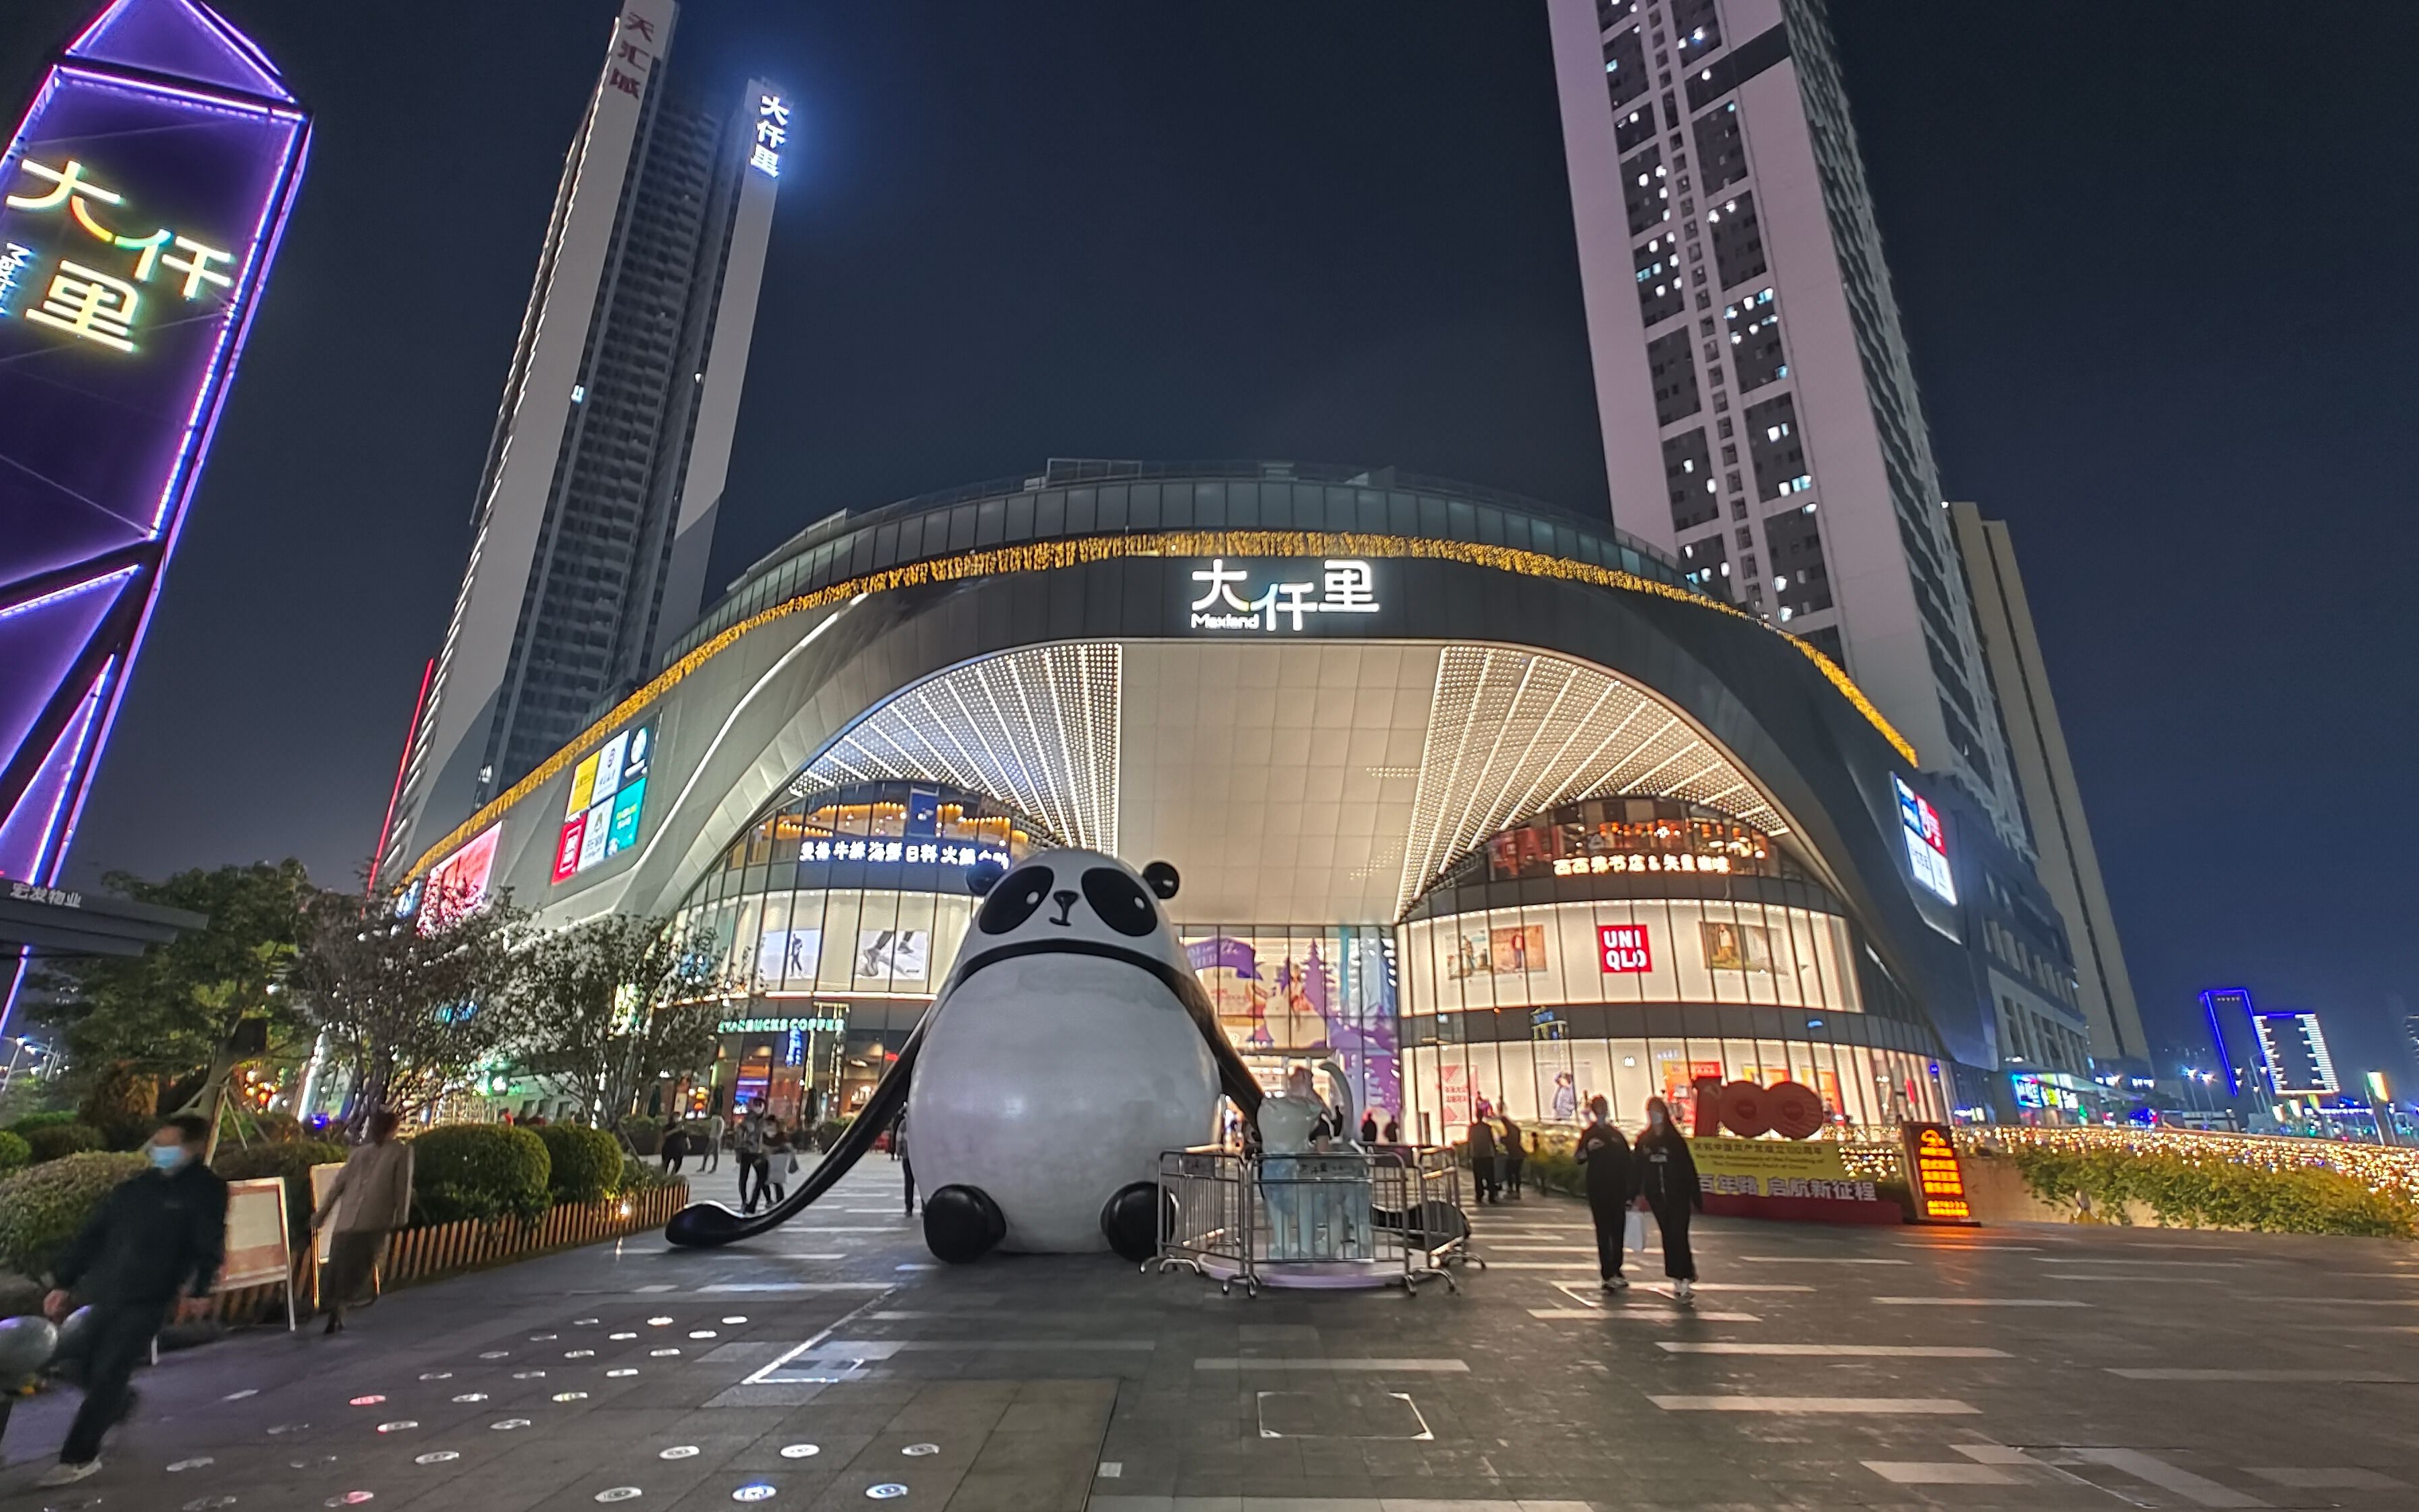 深圳公明广场地铁口,唯美浪漫的大仟里购物中心,餐饮区人气火爆